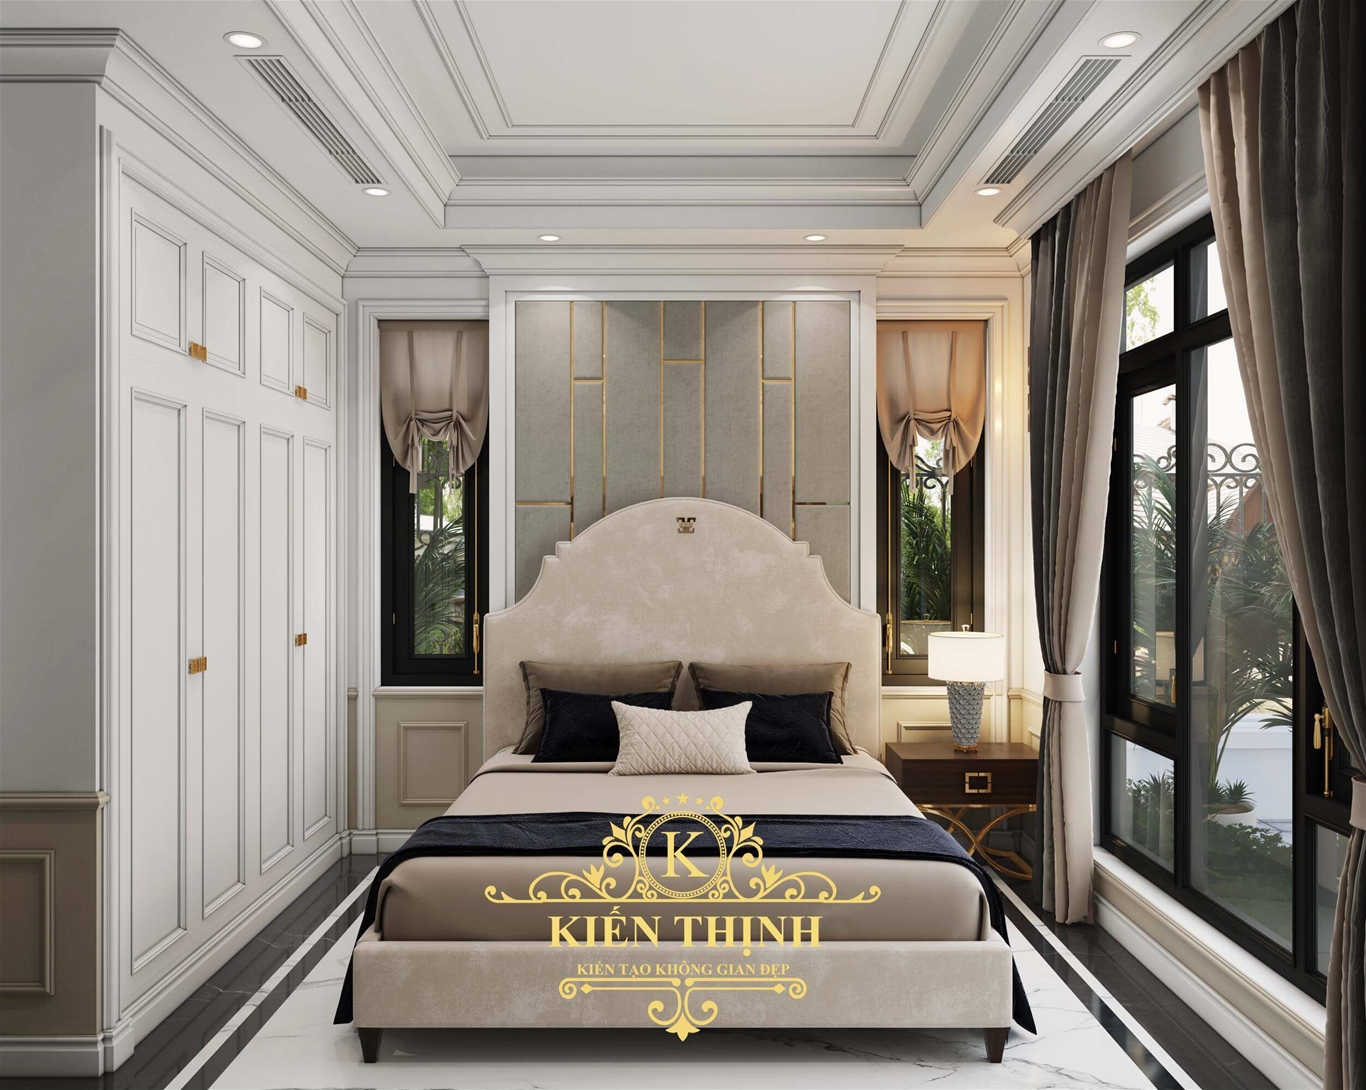  Mẫu thiết kế nội thất phòng ngủ biệt thự vườn phong cách hiện đại 2 tầng đẹp gây thương nhớ tại Quảng Trịt